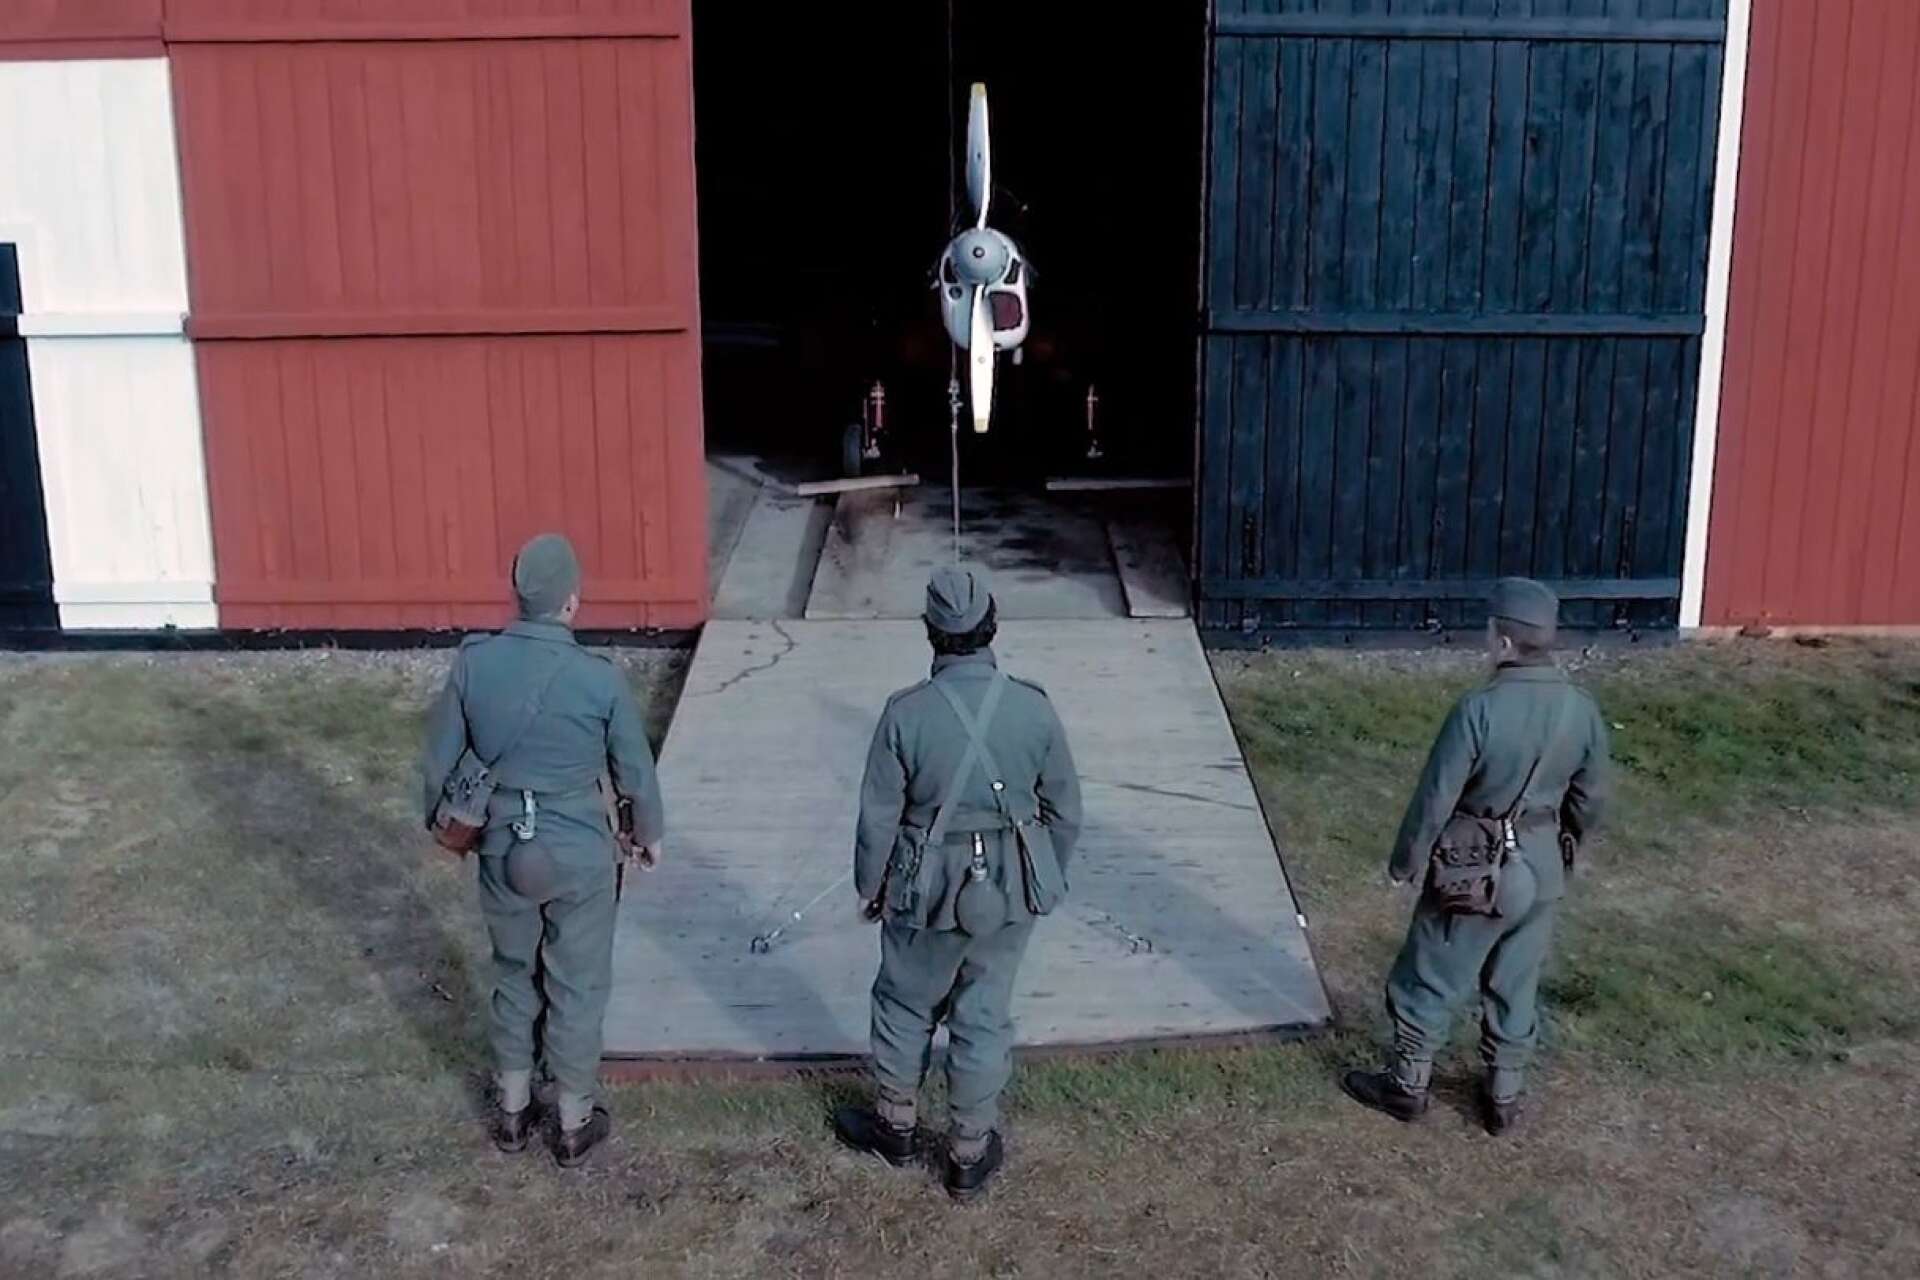 De turbulenta krigsåren på Krigsflygfält 16 på Brattforsheden ska skildras i en film. Här några scener från en tidigare filminspelning på platsen.